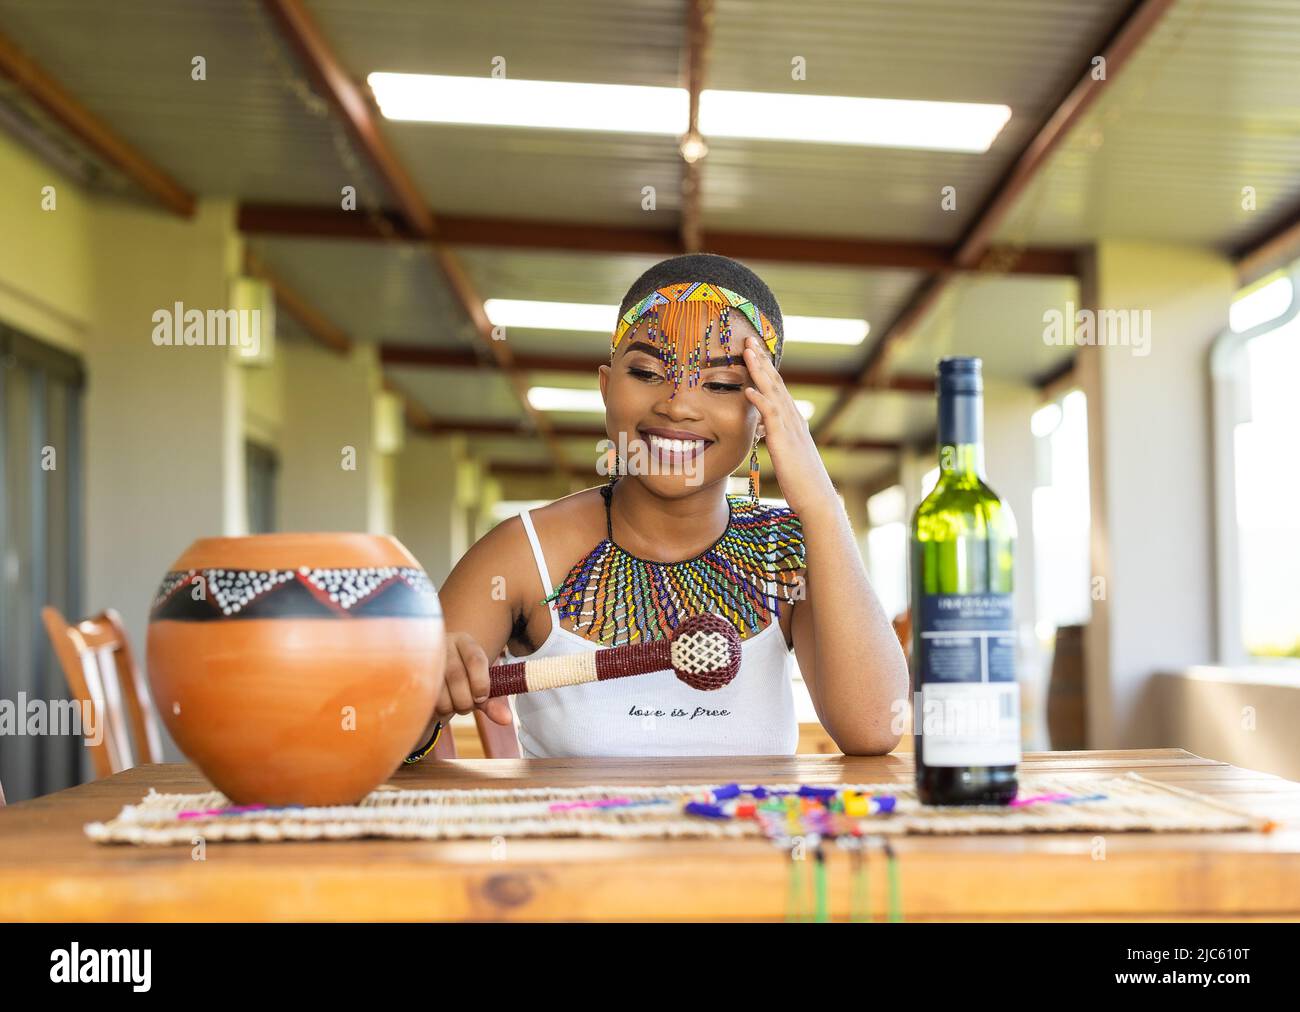 Jeune fille africaine portant des vêtements zulu Banque D'Images